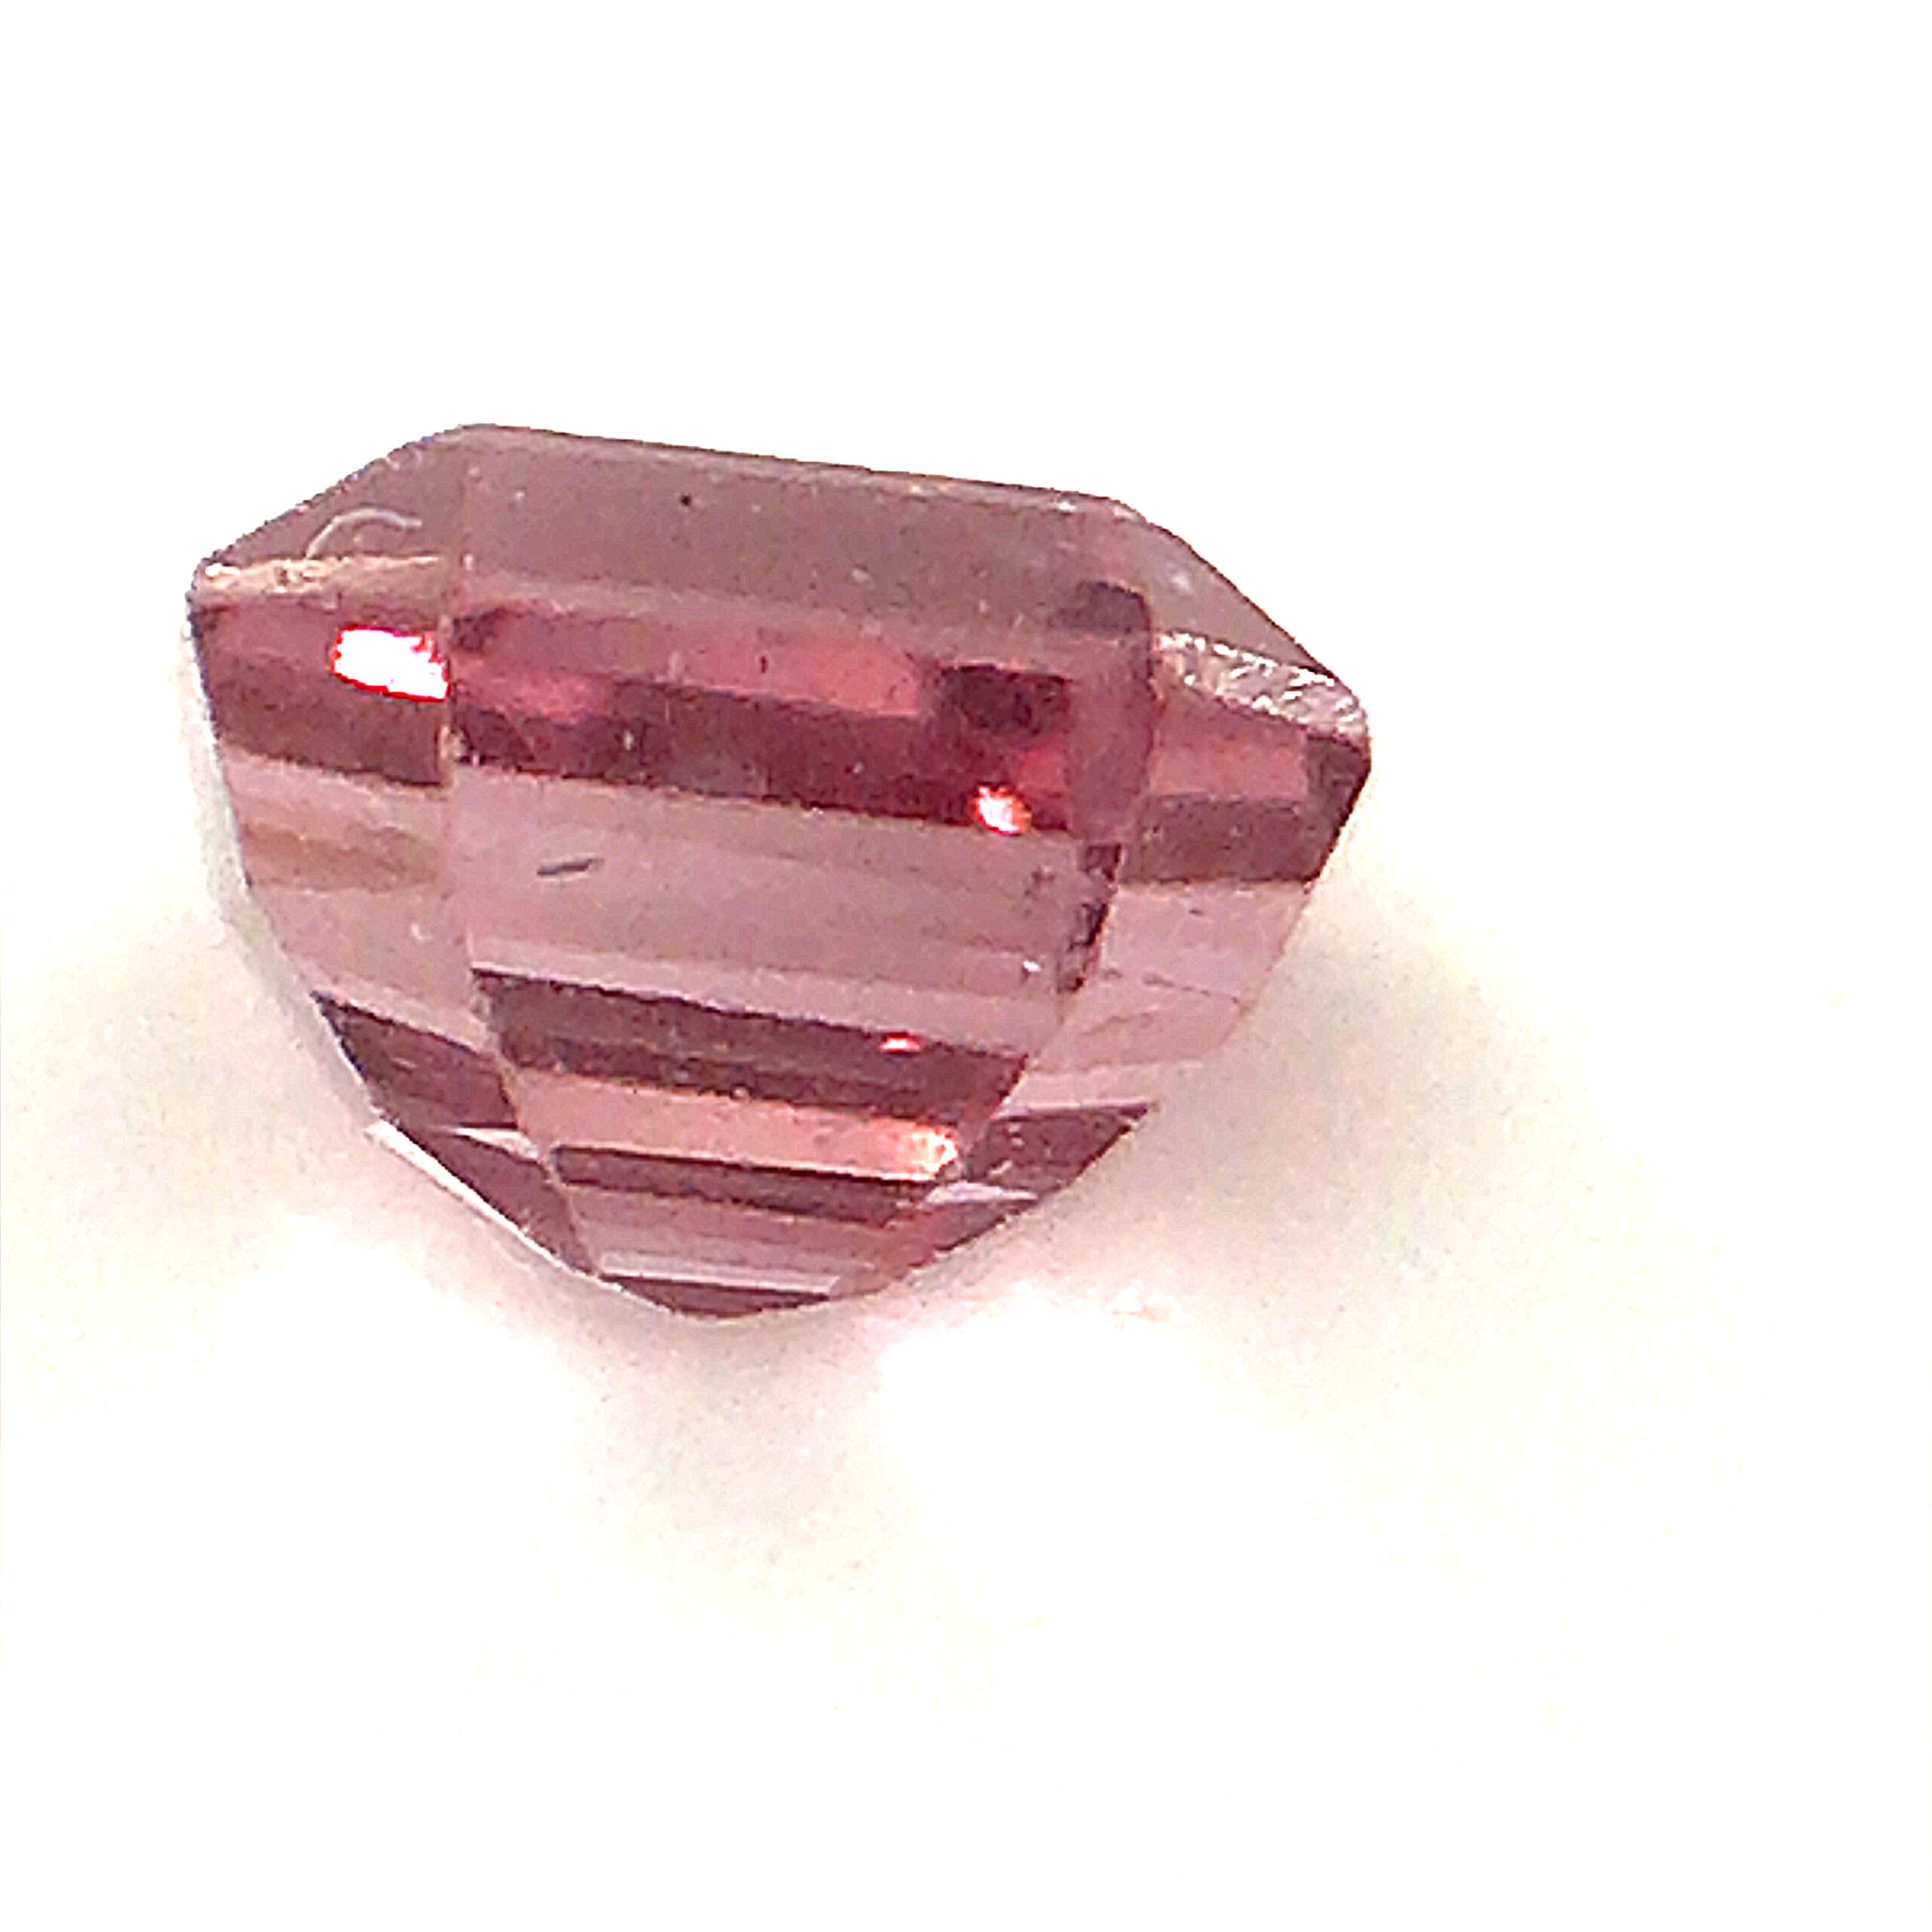 Sri Lanka Pink Emerald Cut Sapphire 0.71 carats 5.6x4.4mm - Simply ...